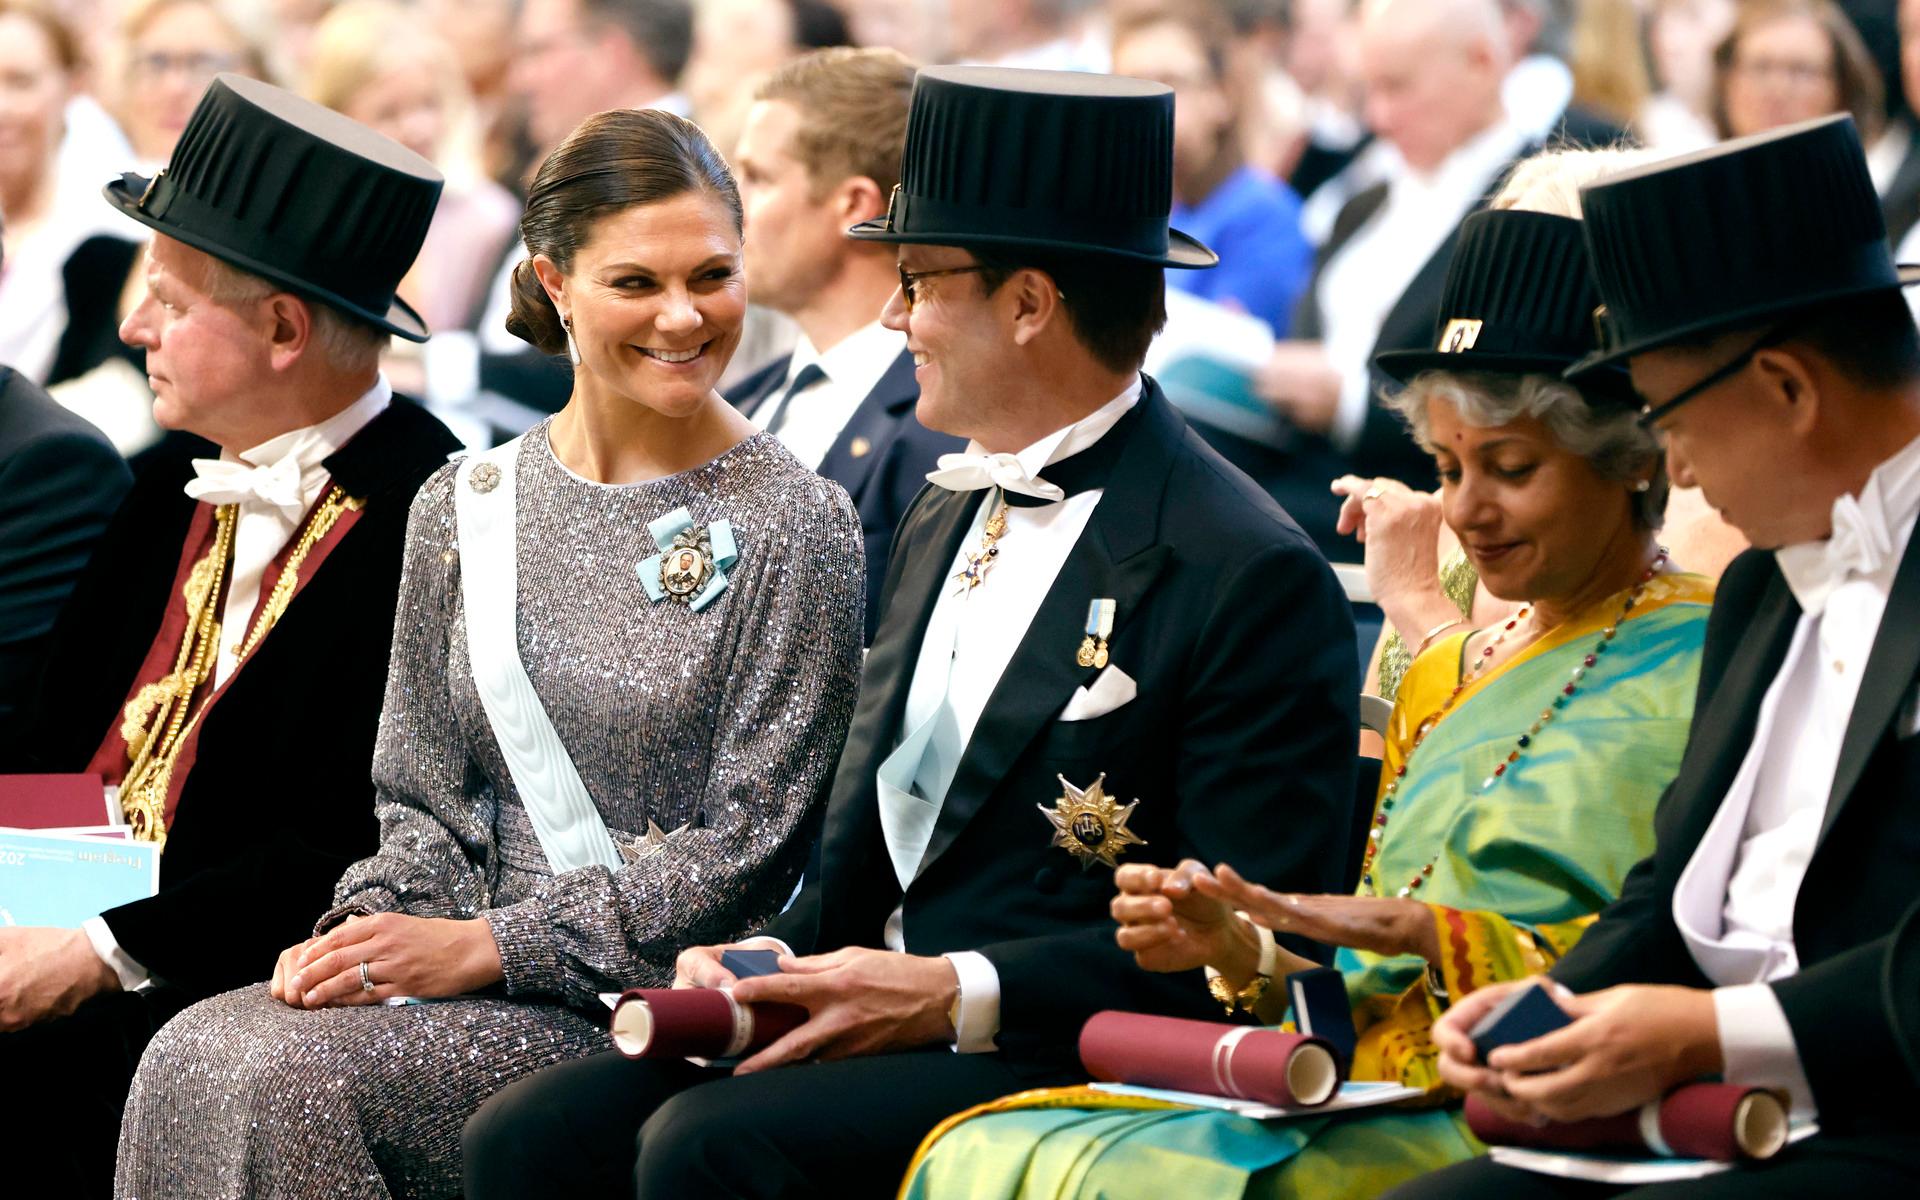 I slutet av april blev prins Daniel   hedersdoktor vid Karolinska institutet under en promoveringsceremoni i Stockholms stadshus. Även Dr. Soumya Swaminathan samt professor Shinhiro Takeda (till höger) utsågs till hedersdoktorer vid samma tillfälle. Kronprinsessan var med vid utnämningen.